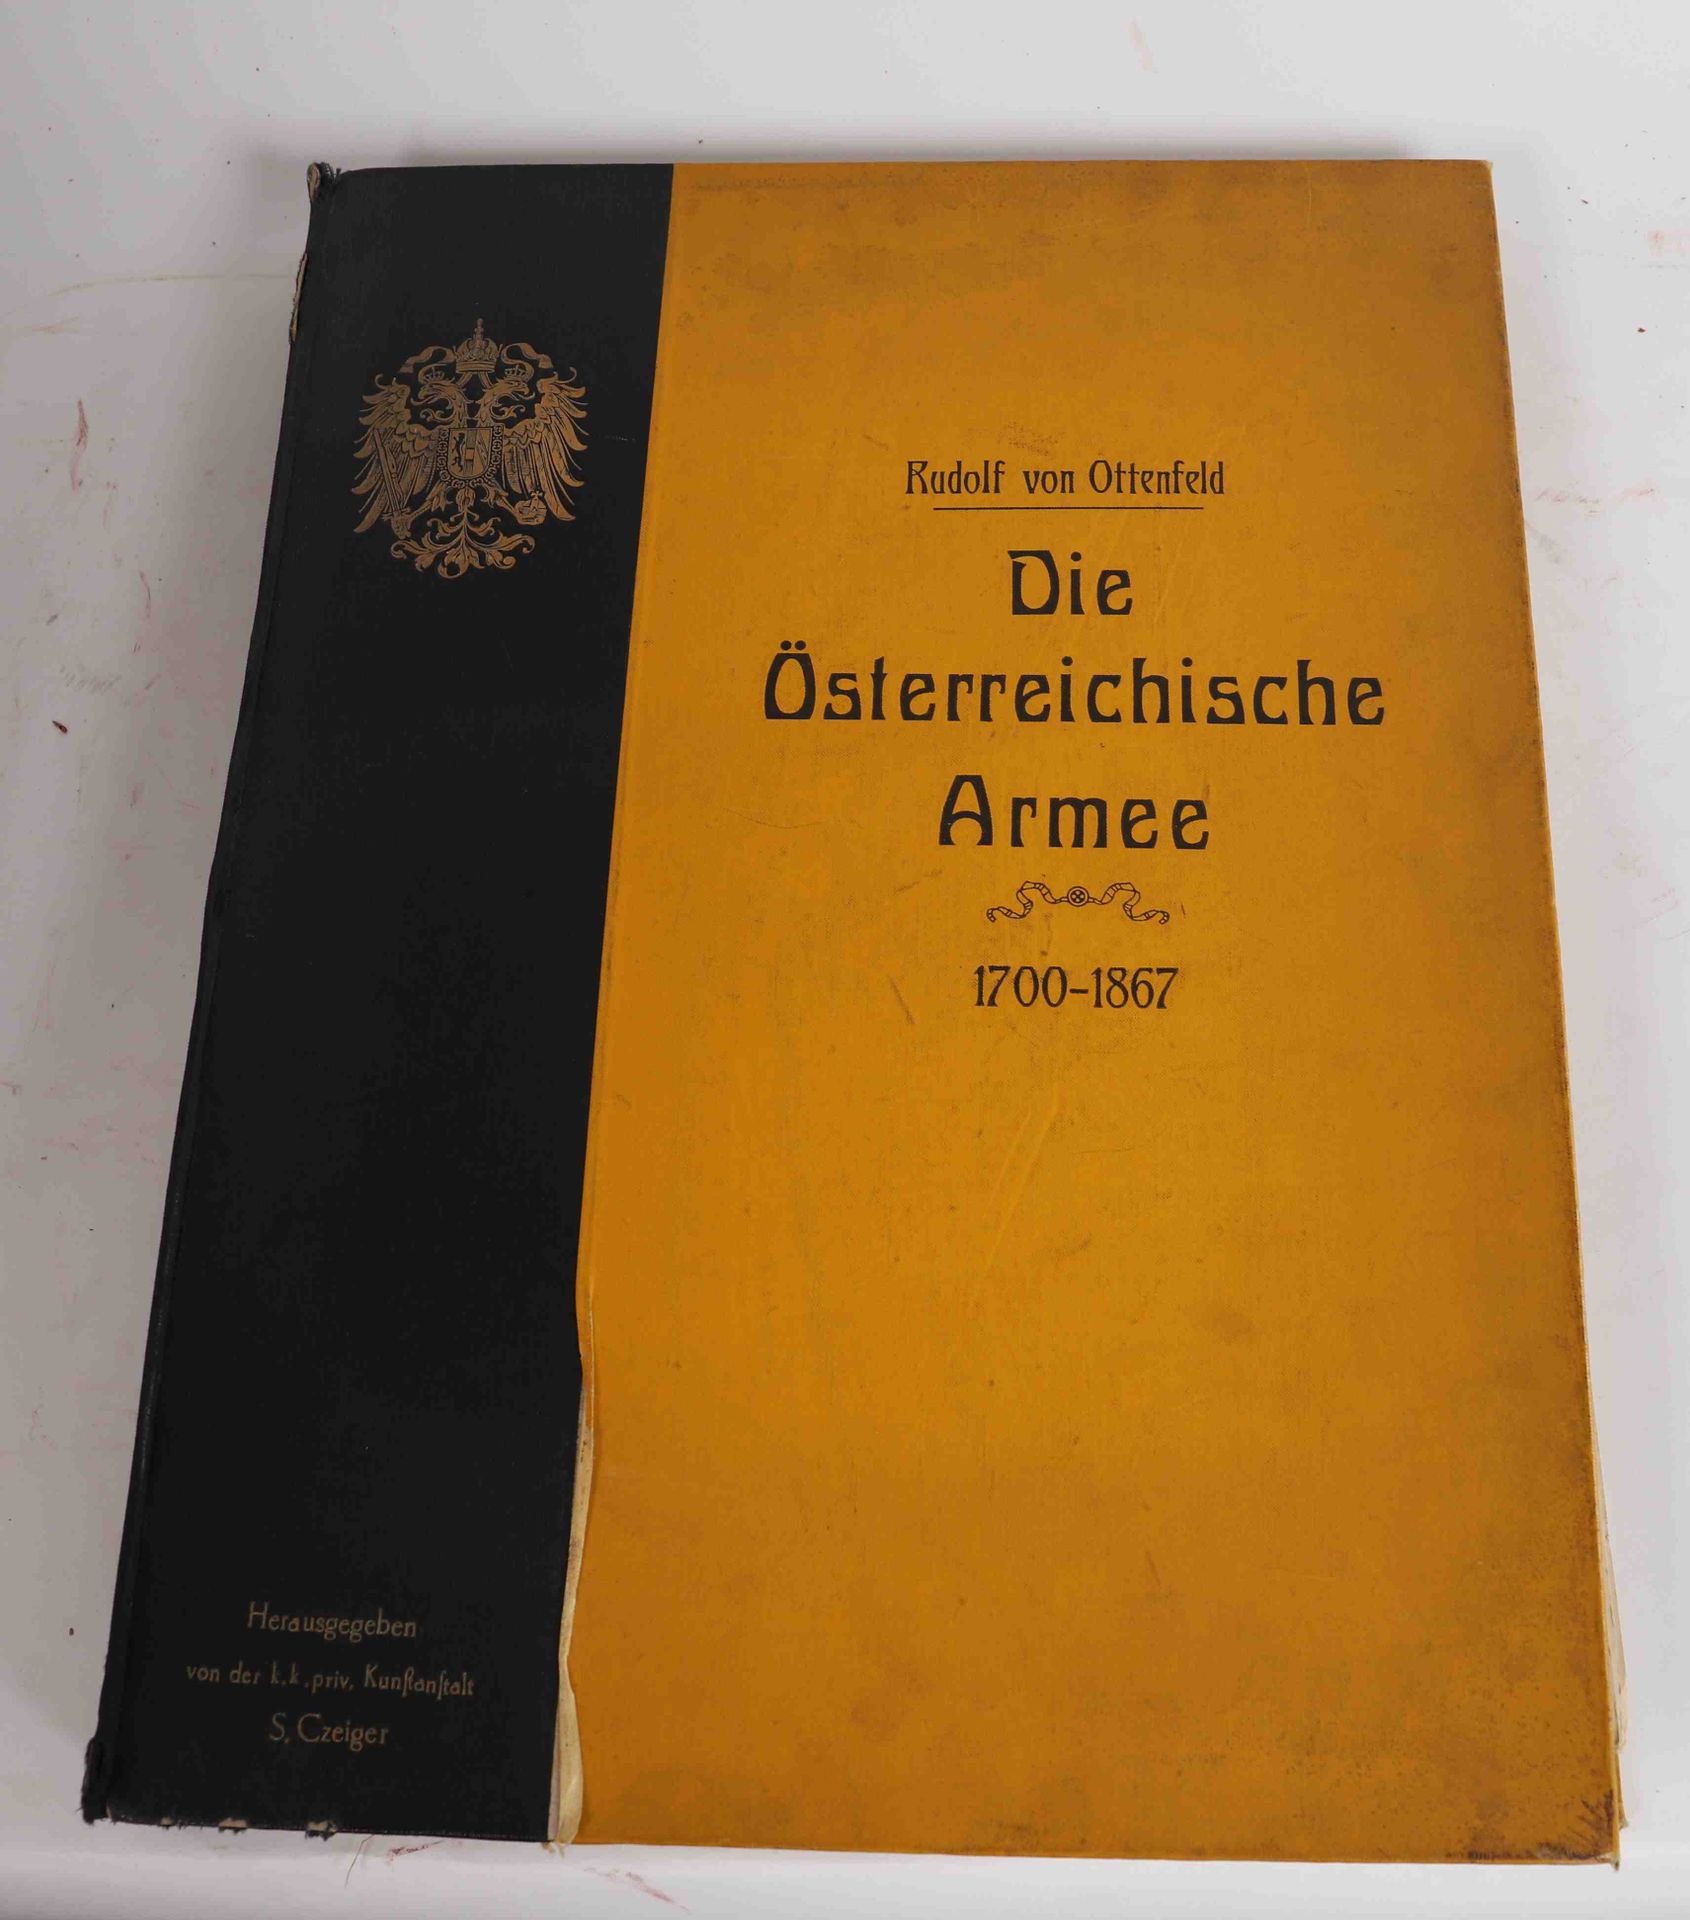 Null "Die Osterreichische Armee 1700-1867" Rudolf VON OTTENFELD

Hardback portfo&hellip;